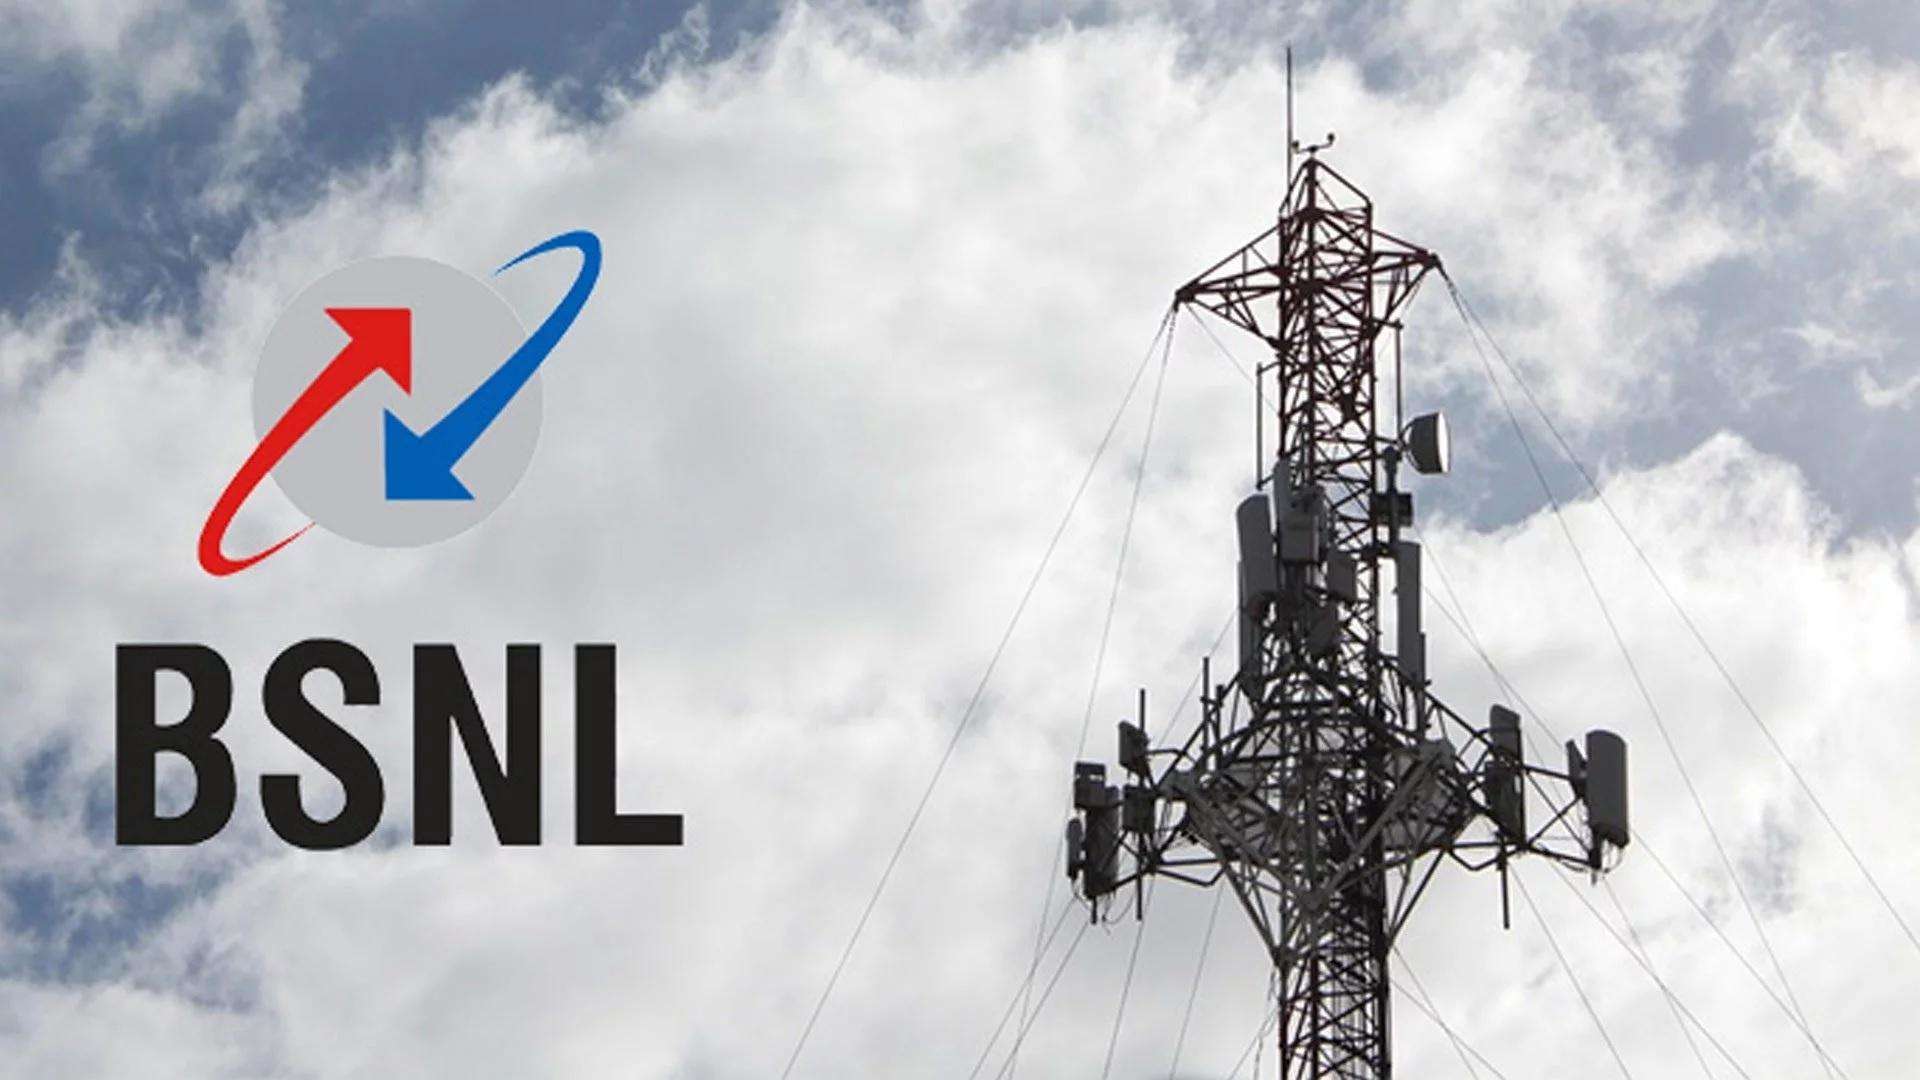 BSNL ने अपने नए प्लान को पेश कर दिया गया, इसमें मिलेगा अनलिमिटेड डाटा